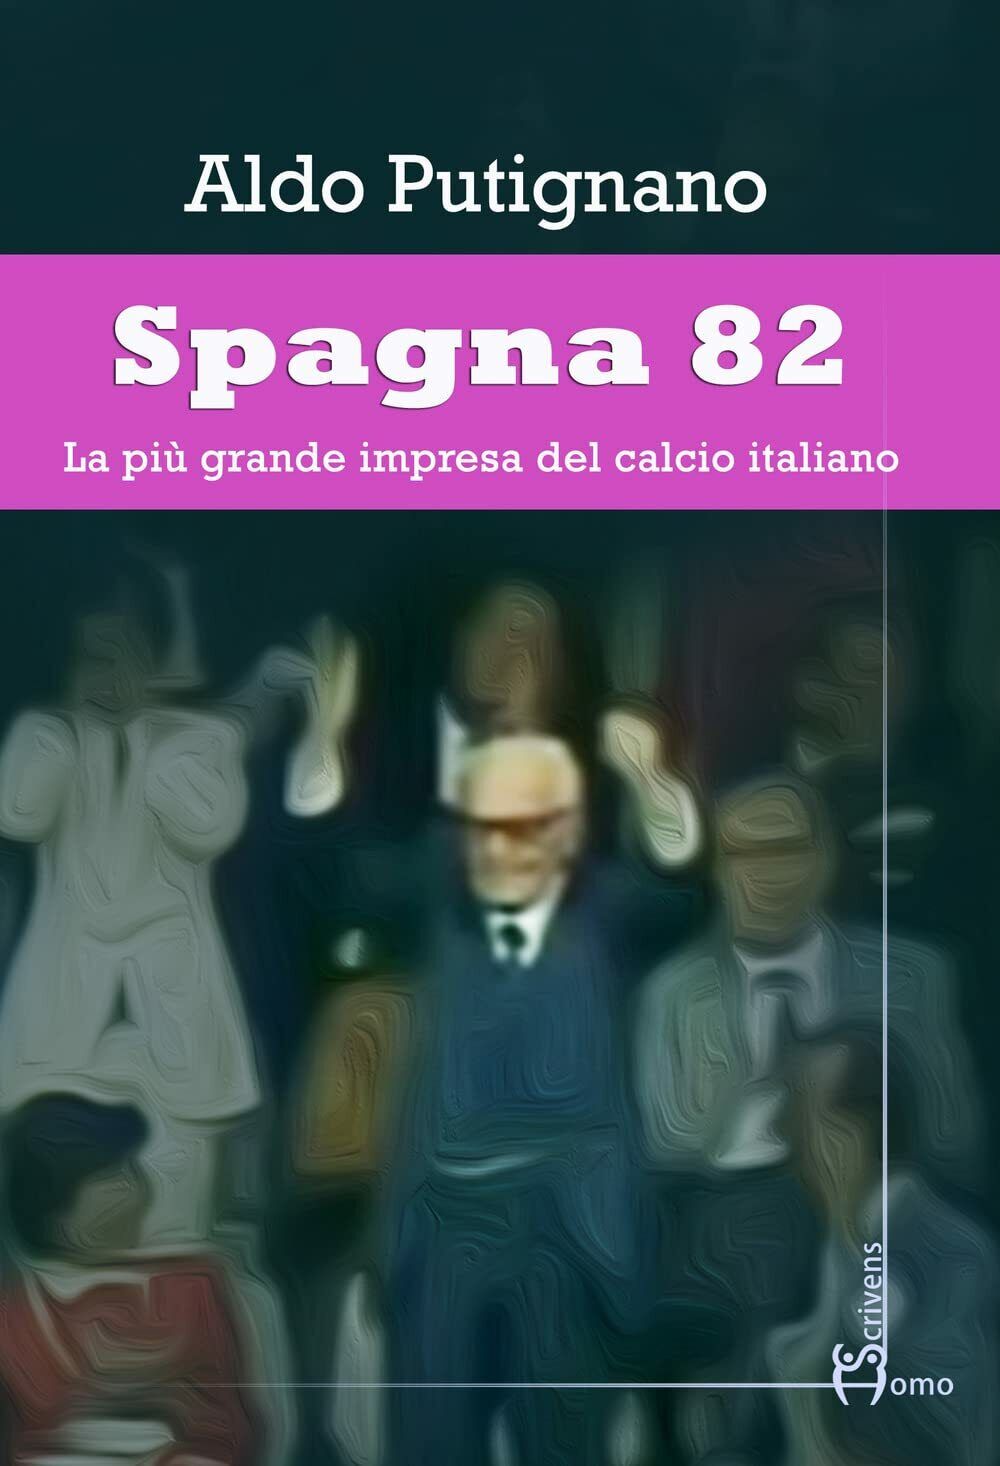 Spagna 82 - Aldo Putignano - Homo Scrivens, 2022 libro usato